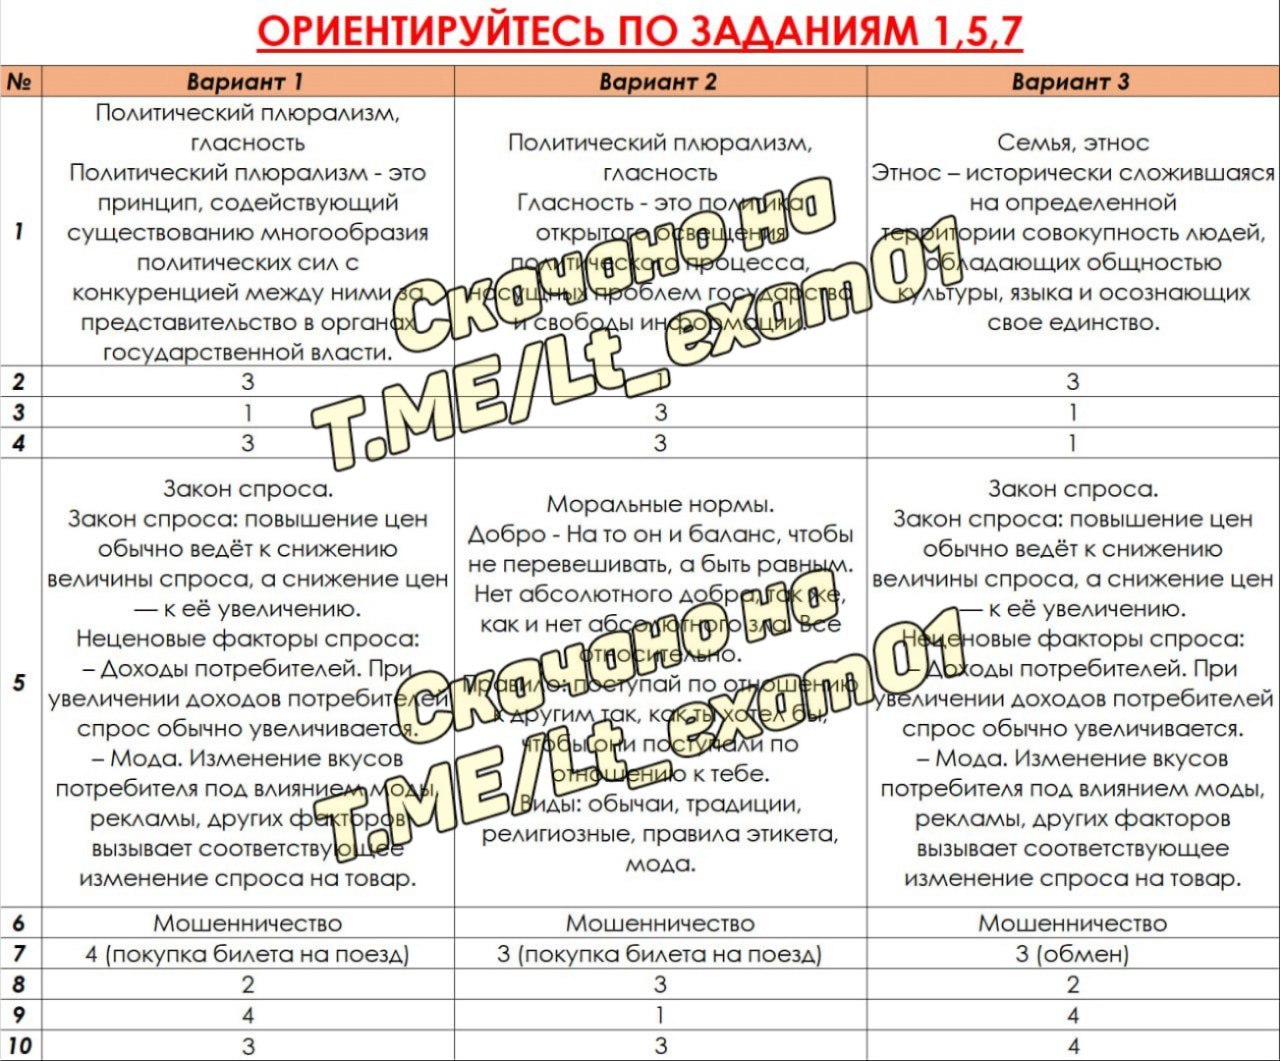 Телеграмм ответы на огэ по русскому языку фото 92